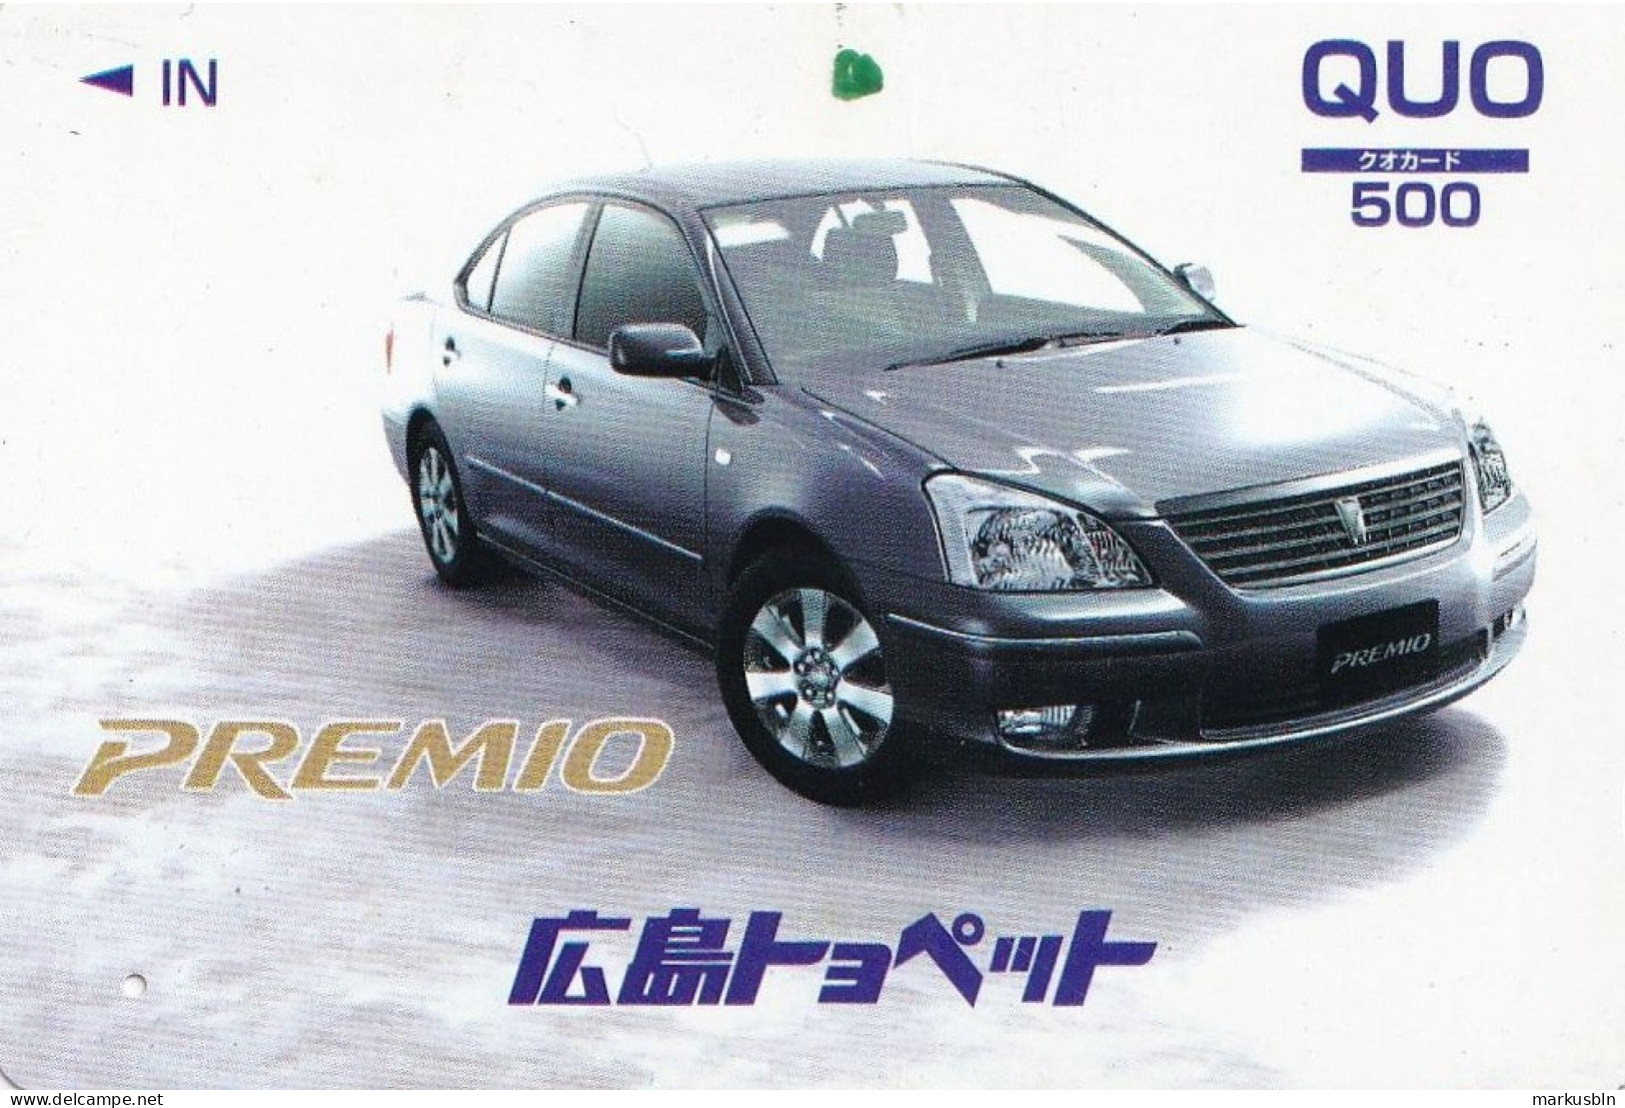 Japan Prepaid Quo Card 500 -  Car Premio - Japan